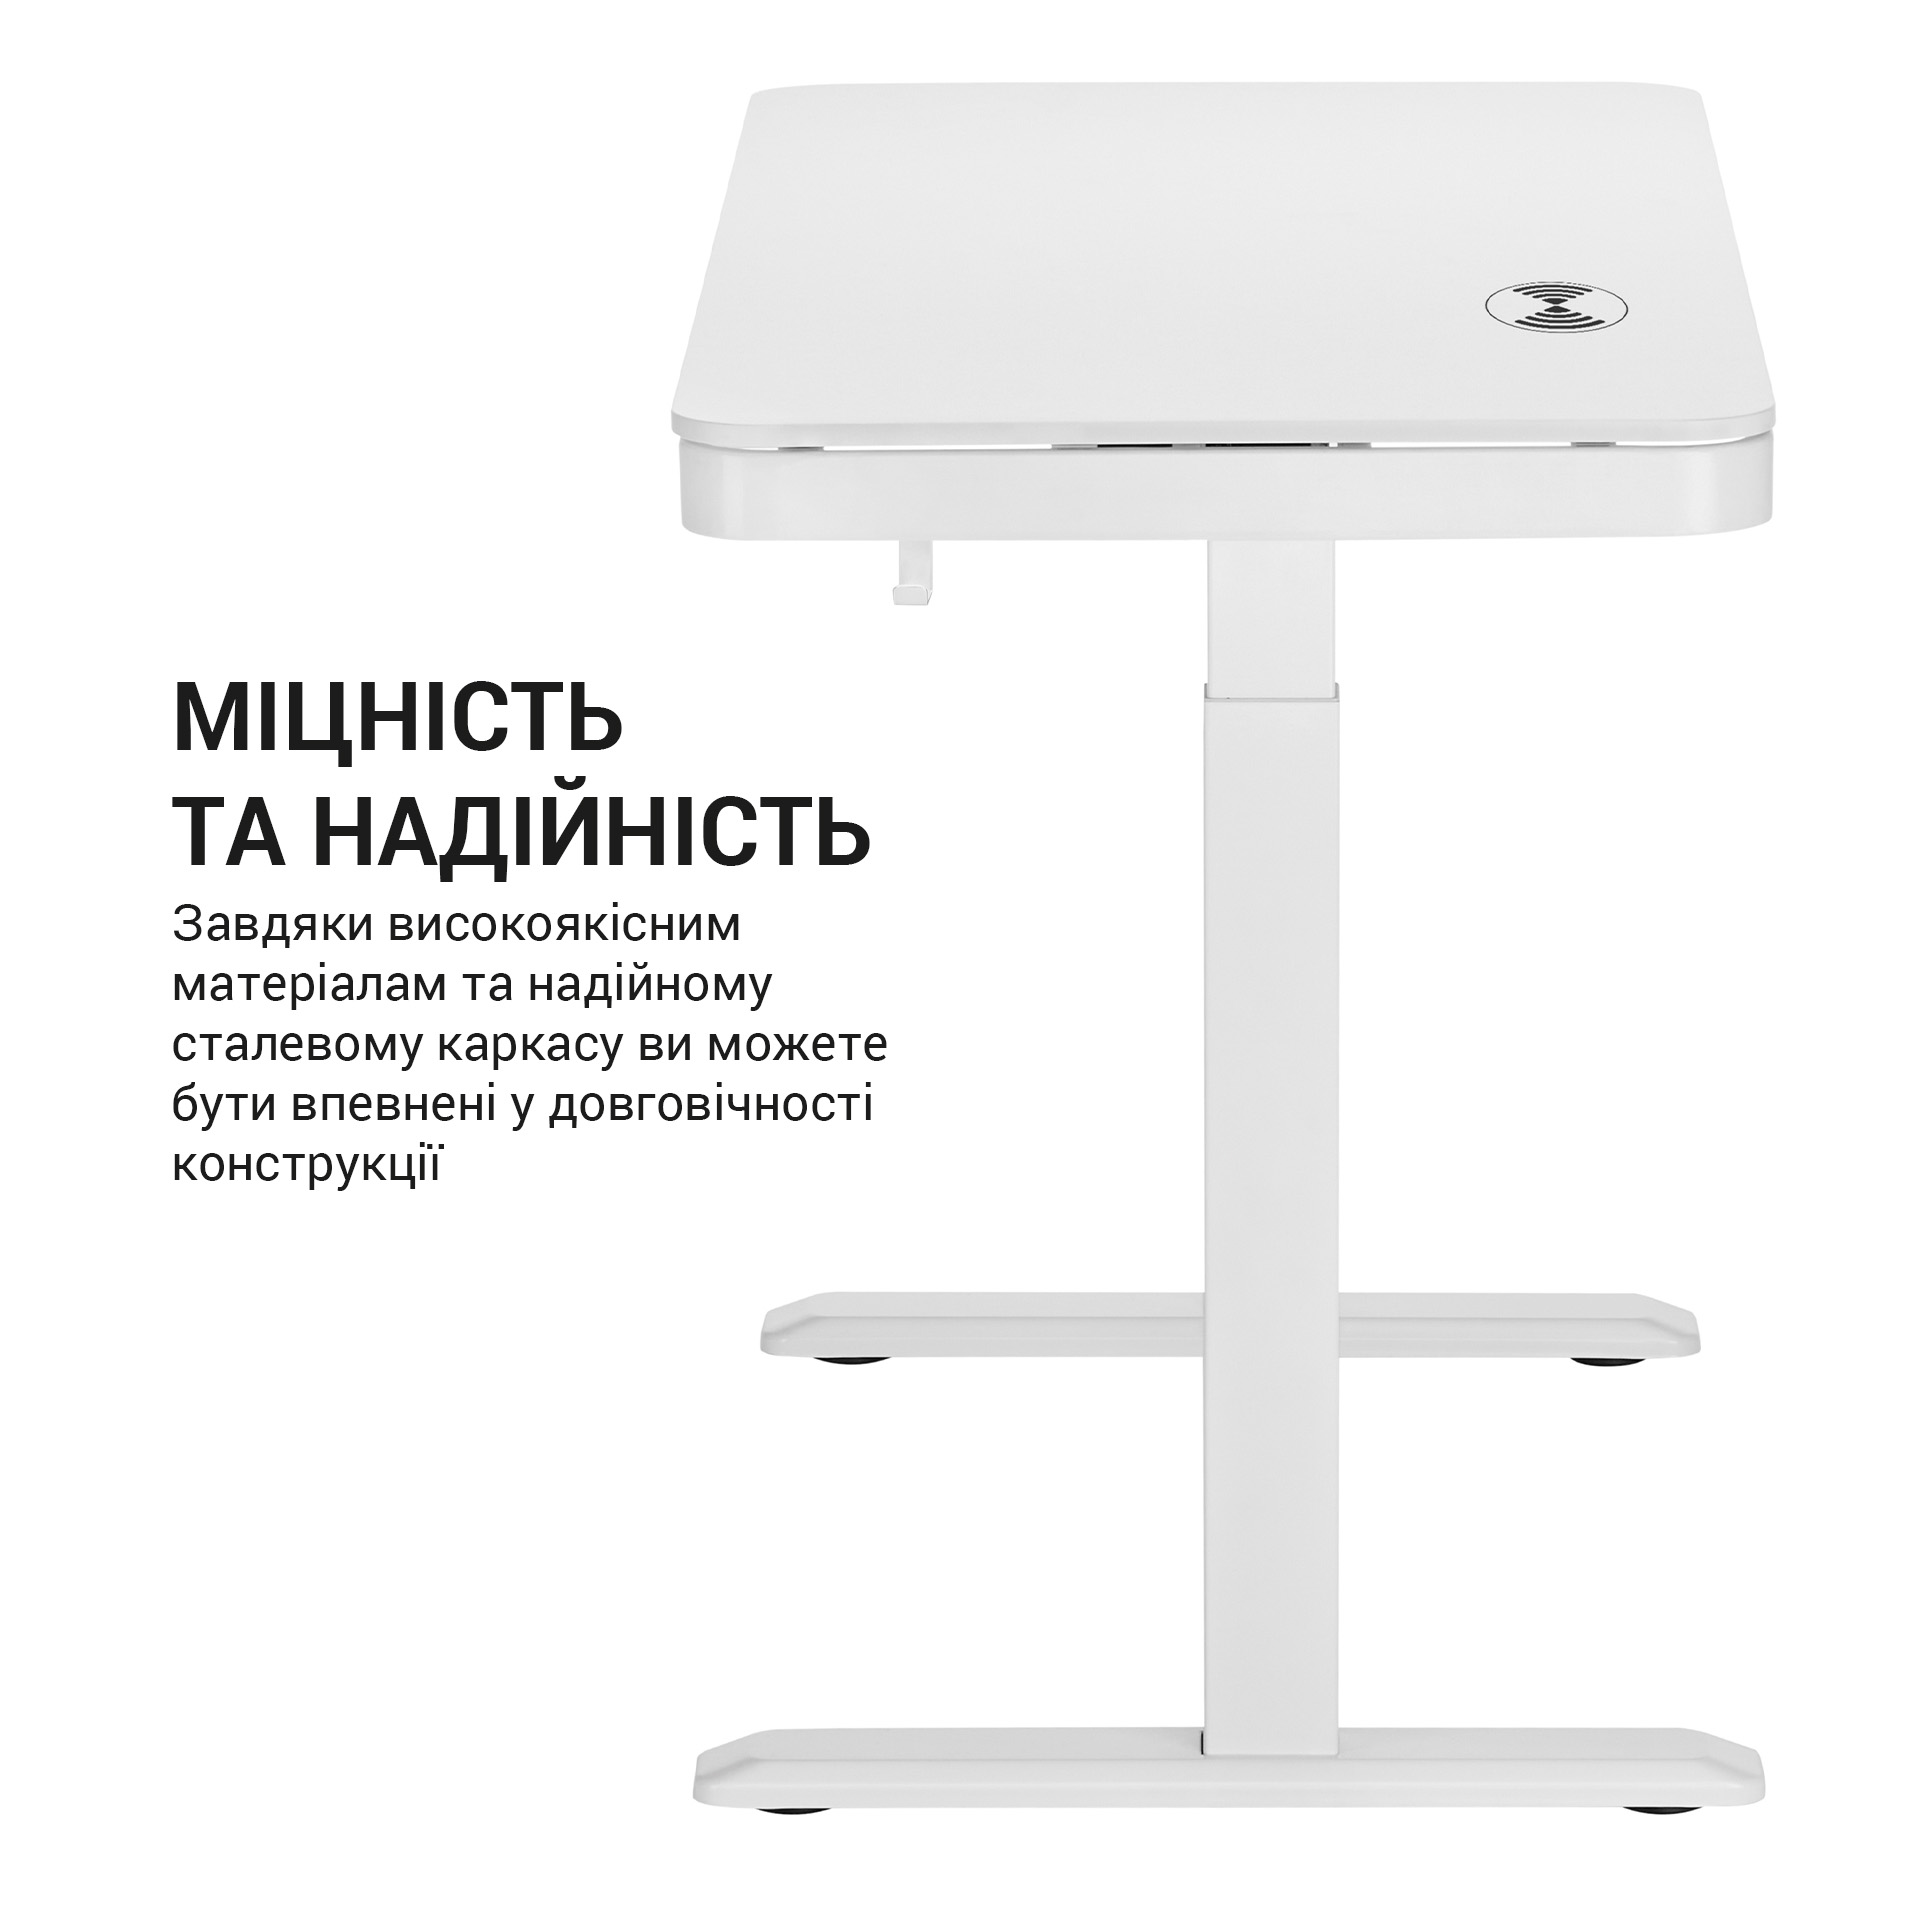 Комп'ютерний стіл OfficePro з електрорегулюванням висоти білий (ODE111WW) - фото 11